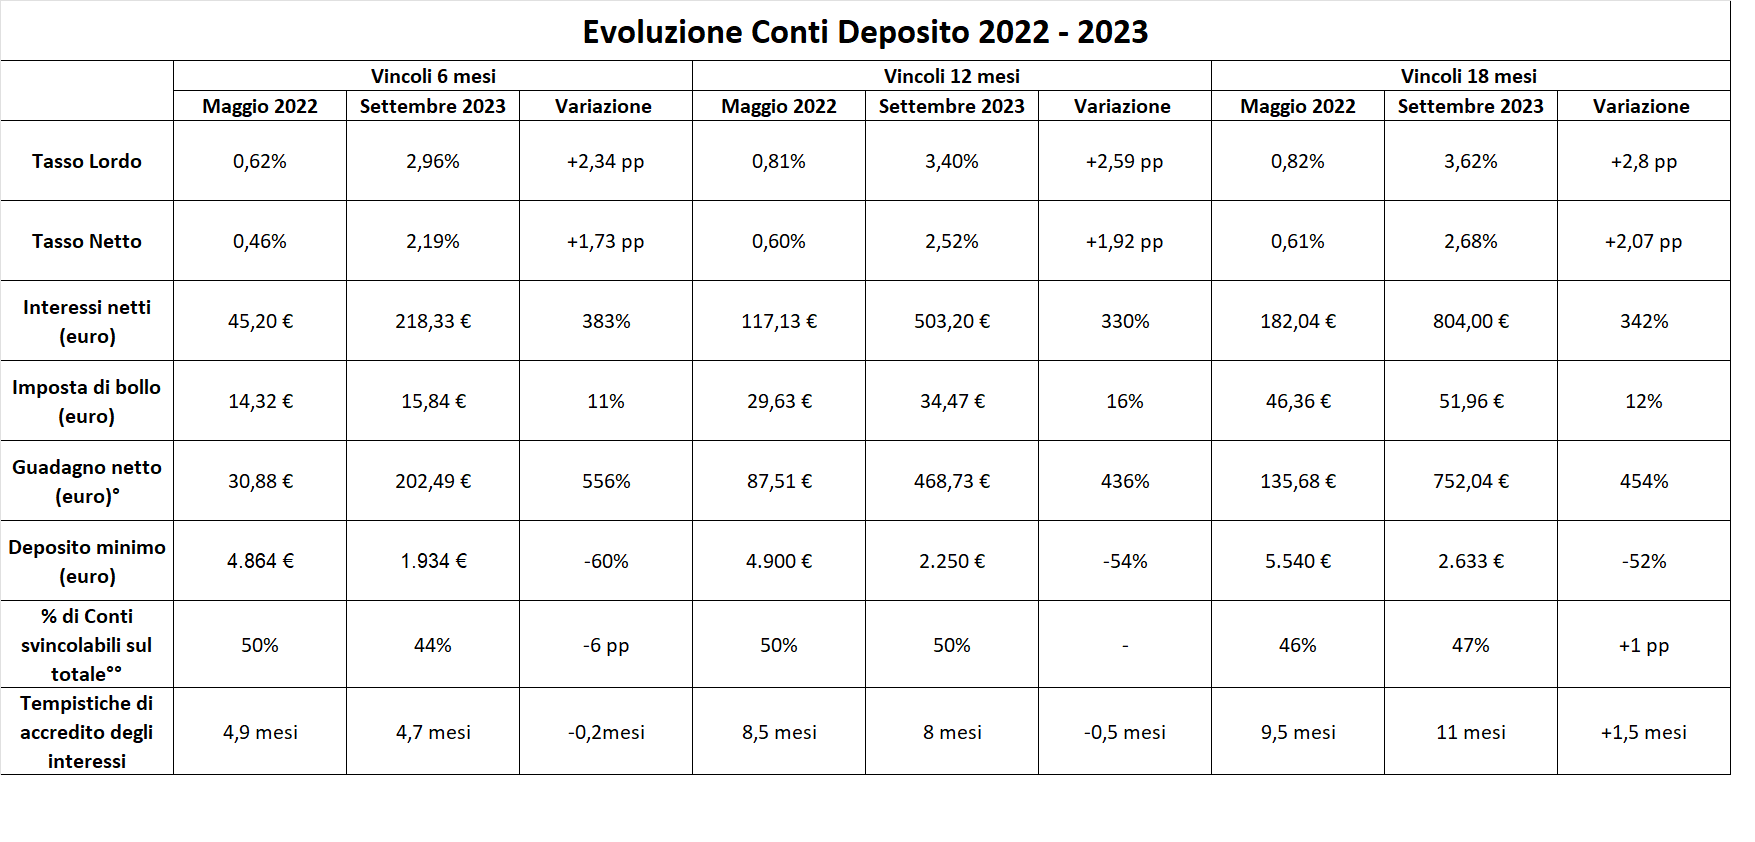 conto deposito evoluzione tassi, interessi, imposta di bollo dal 2022 al 2023